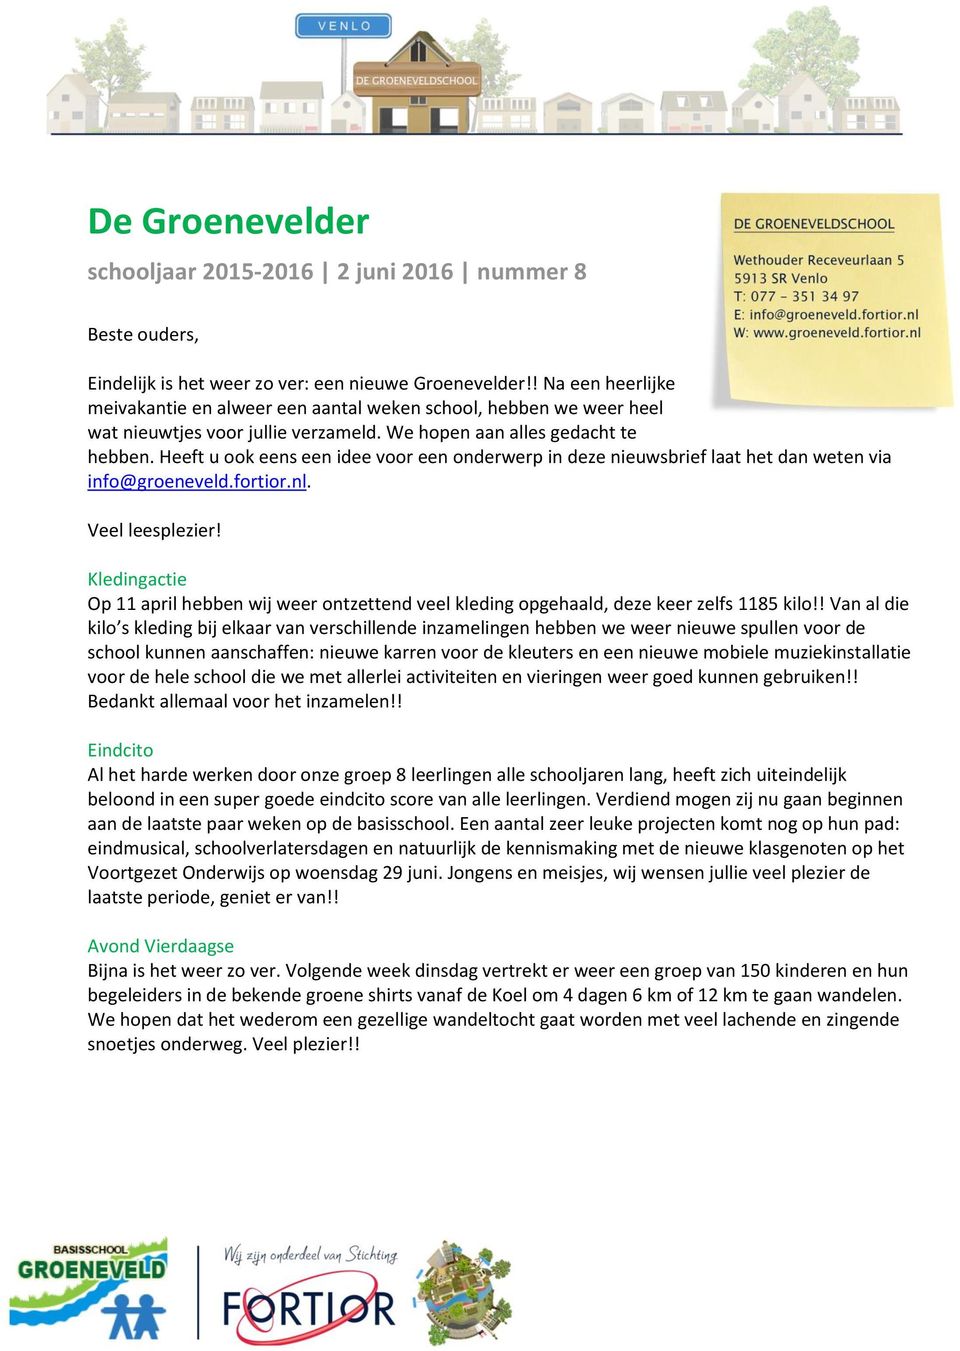 Heeft u ook eens een idee voor een onderwerp in deze nieuwsbrief laat het dan weten via info@groeneveld.fortior.nl. Veel leesplezier!